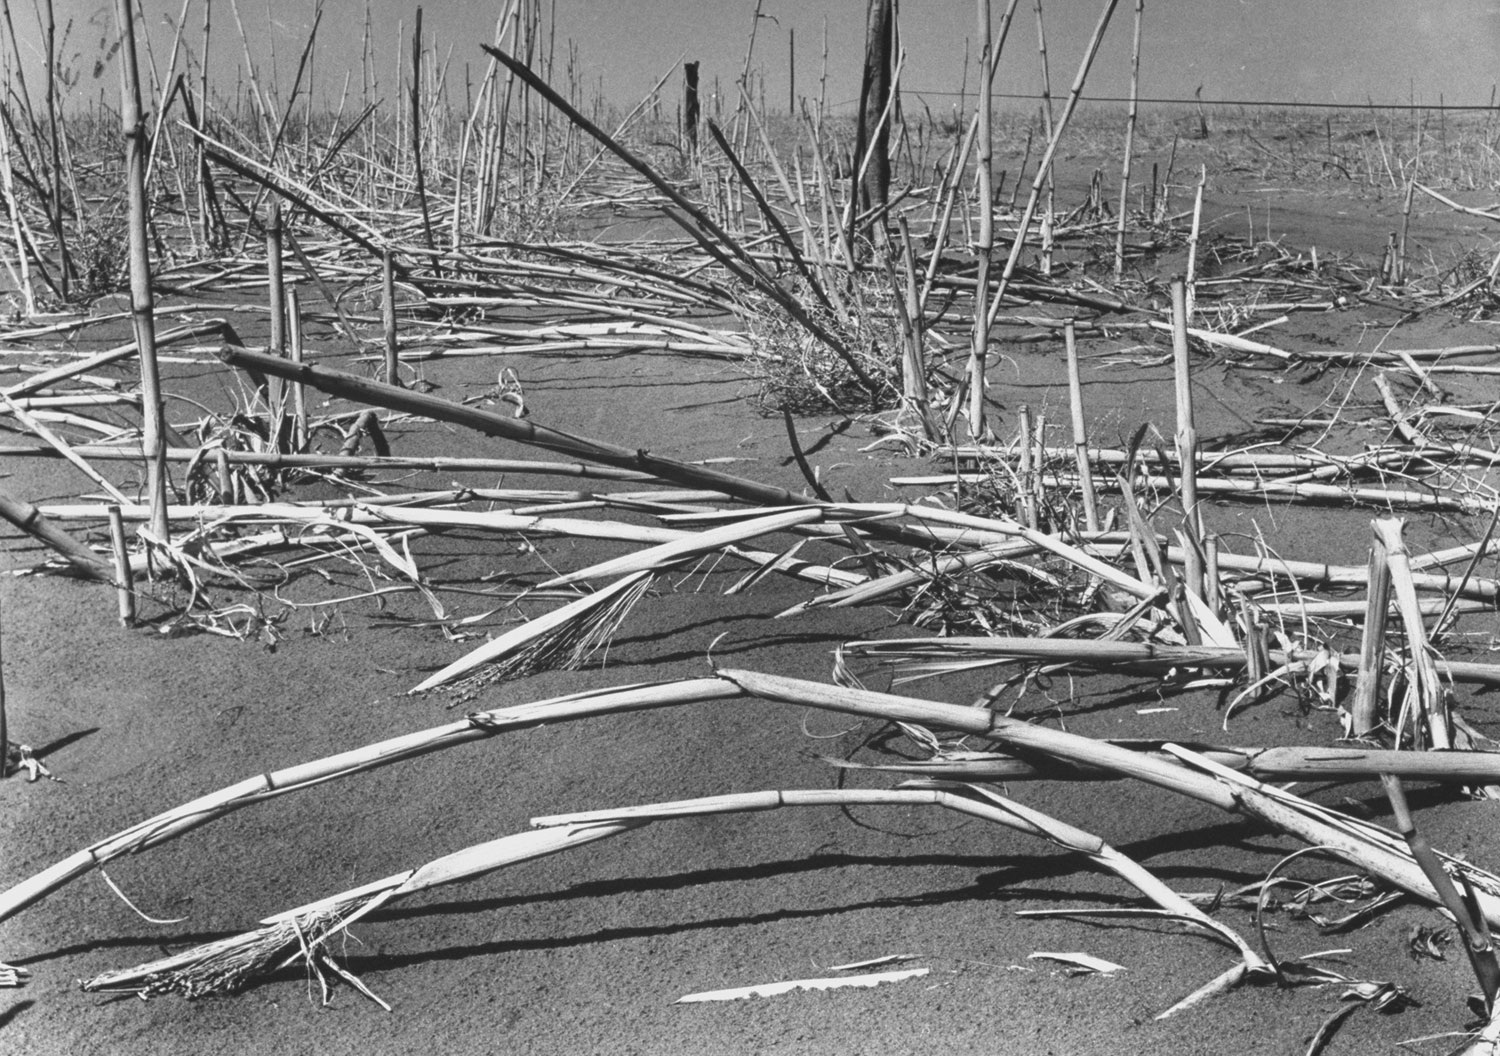 Felled broomcorn, dust and wind victim, lies near Walsh, once 'Broomcorn Capital of U.S.